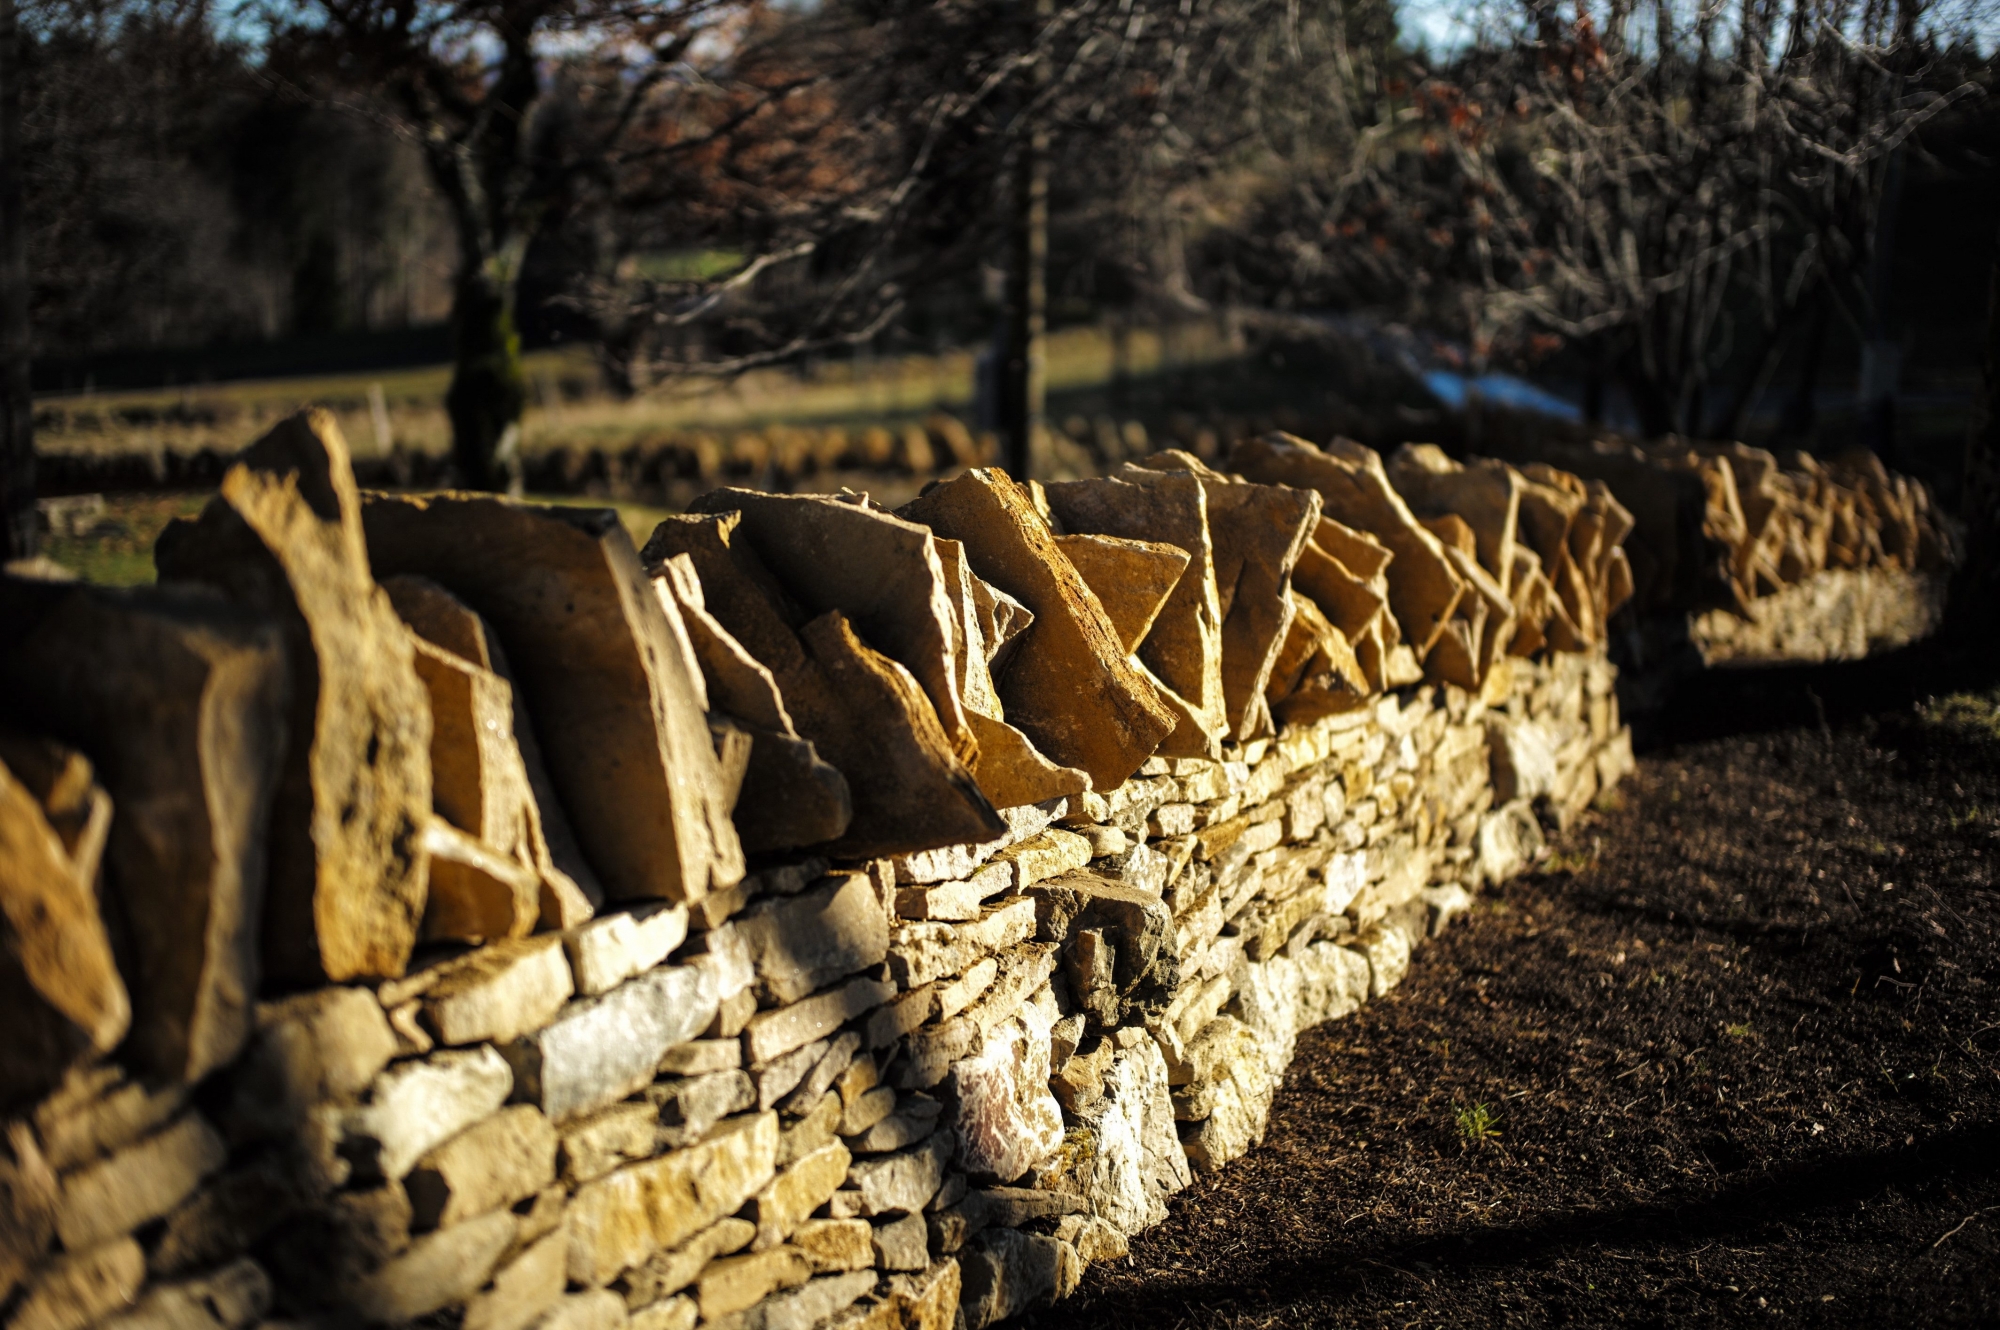 Mur de pierres seches a la Sombaille 24.

LA CHAUX-DE-FONDS 17 12 2015
PHOTO: Christian Galley LA CHAUX-DE-FONDS